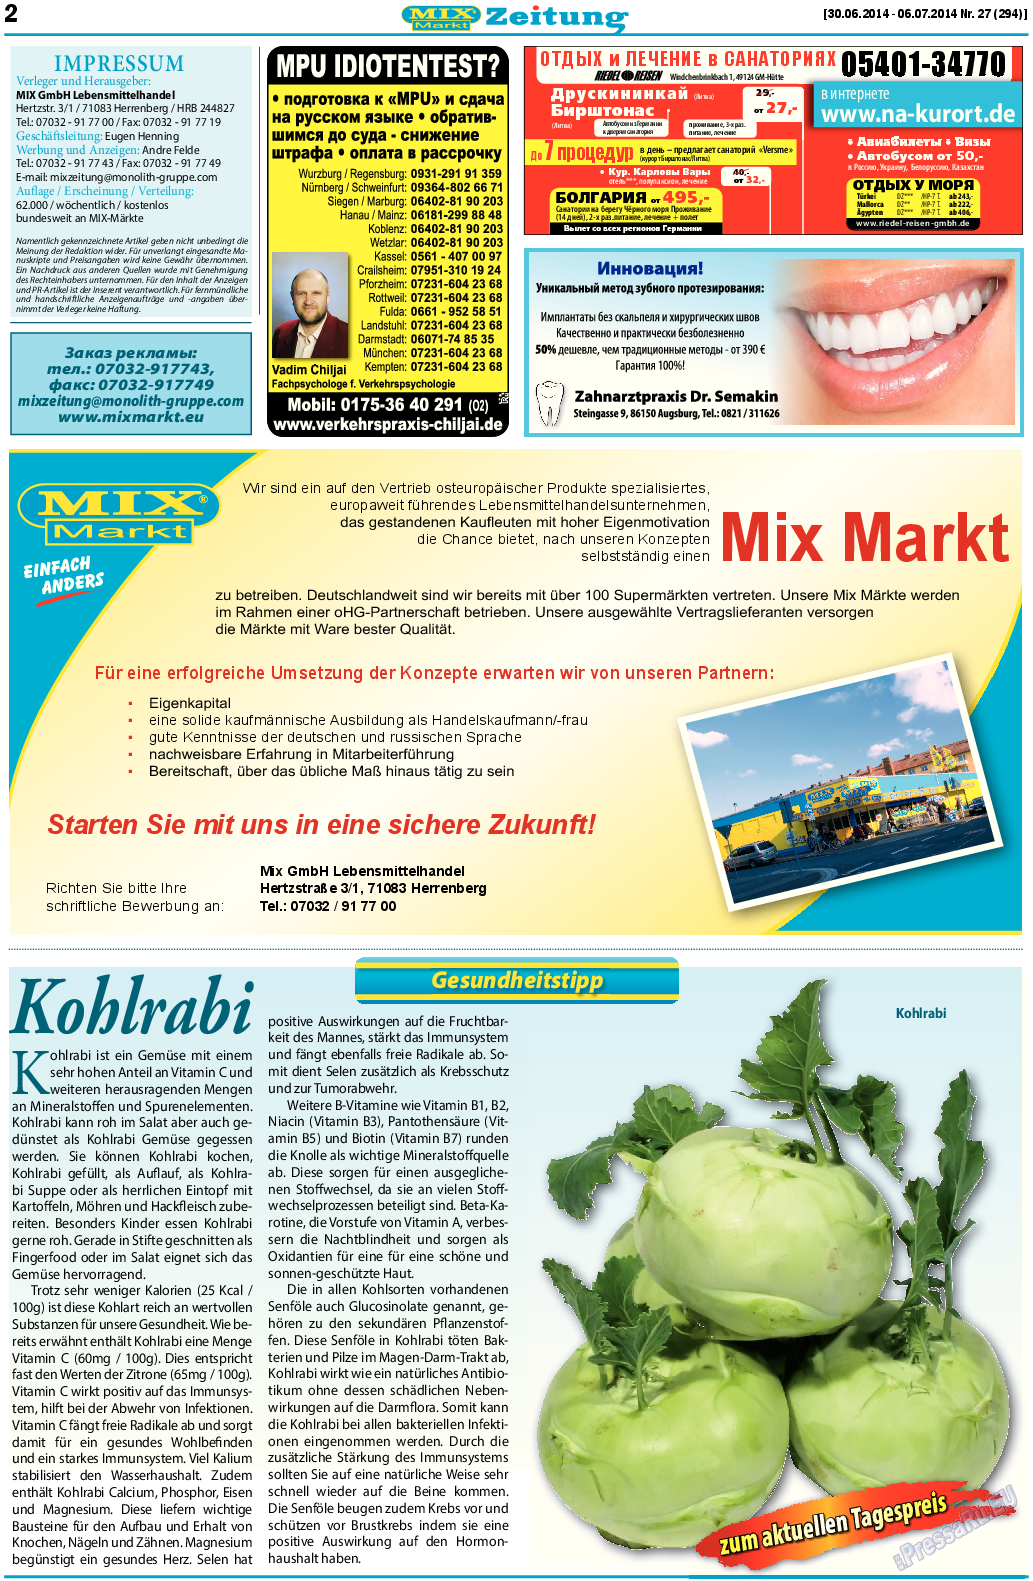 MIX-Markt Zeitung, газета. 2014 №27 стр.2